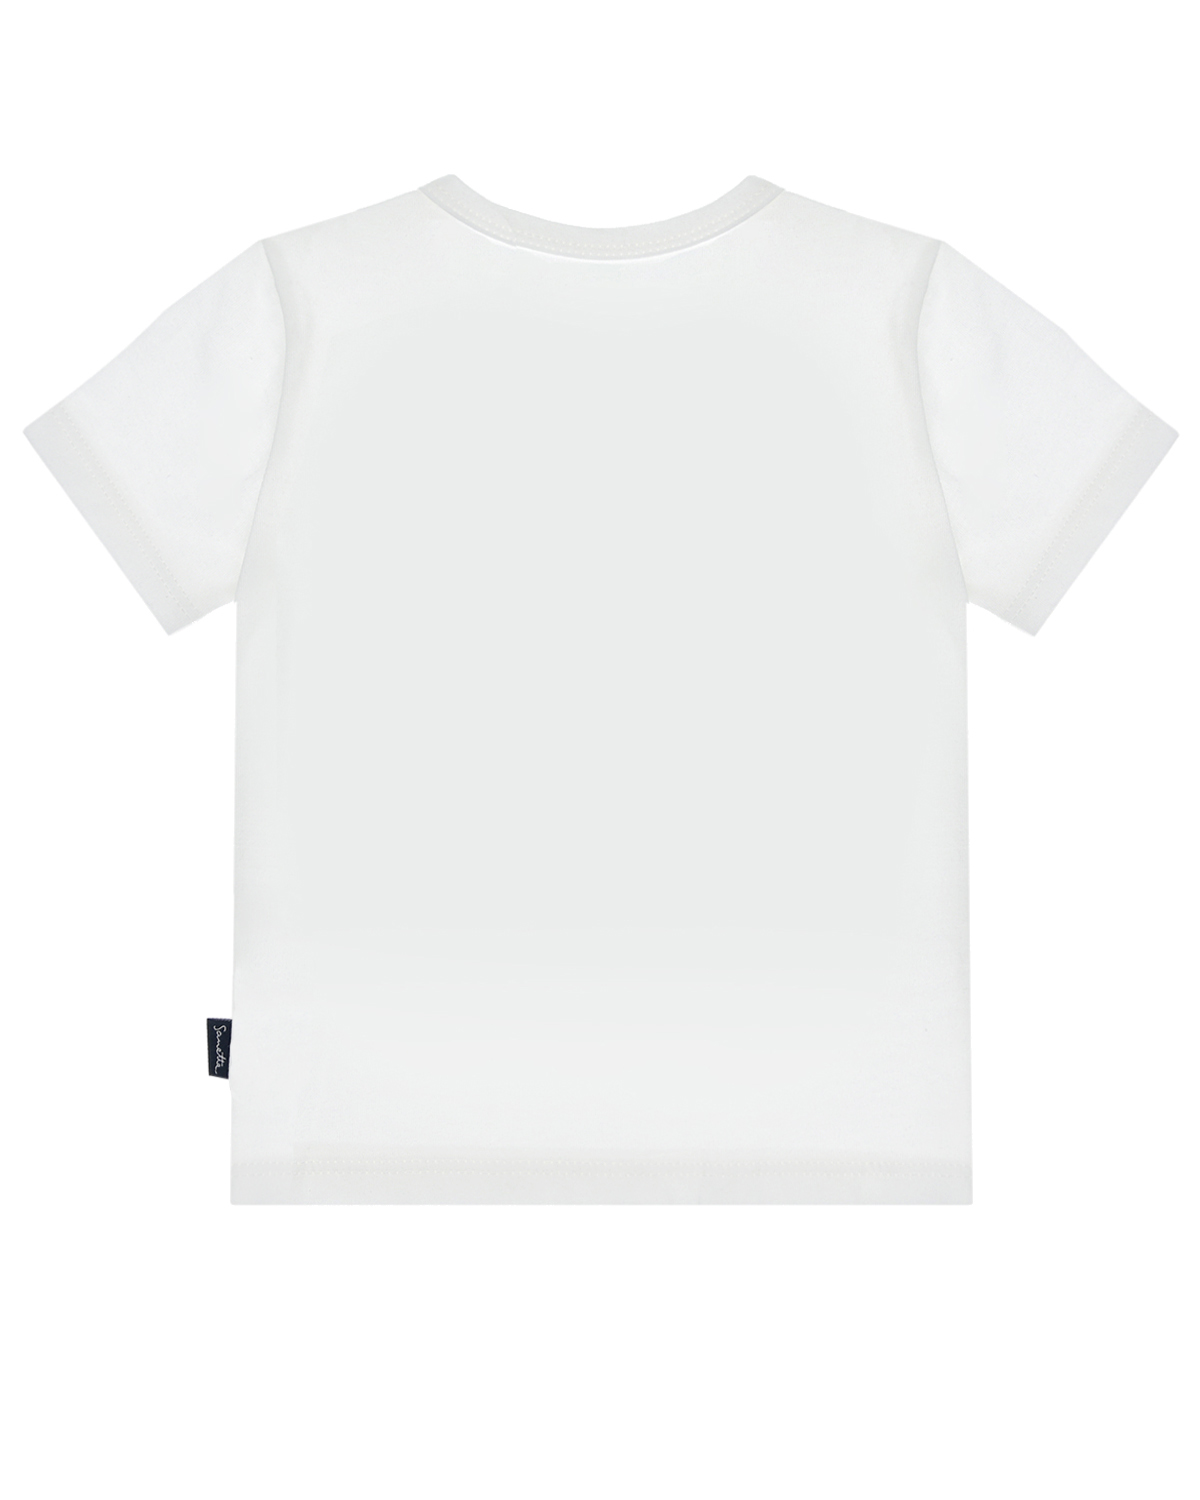 Кремовая футболка с принтом "моряк" Sanetta Kidswear детская, размер 68, цвет кремовый - фото 2